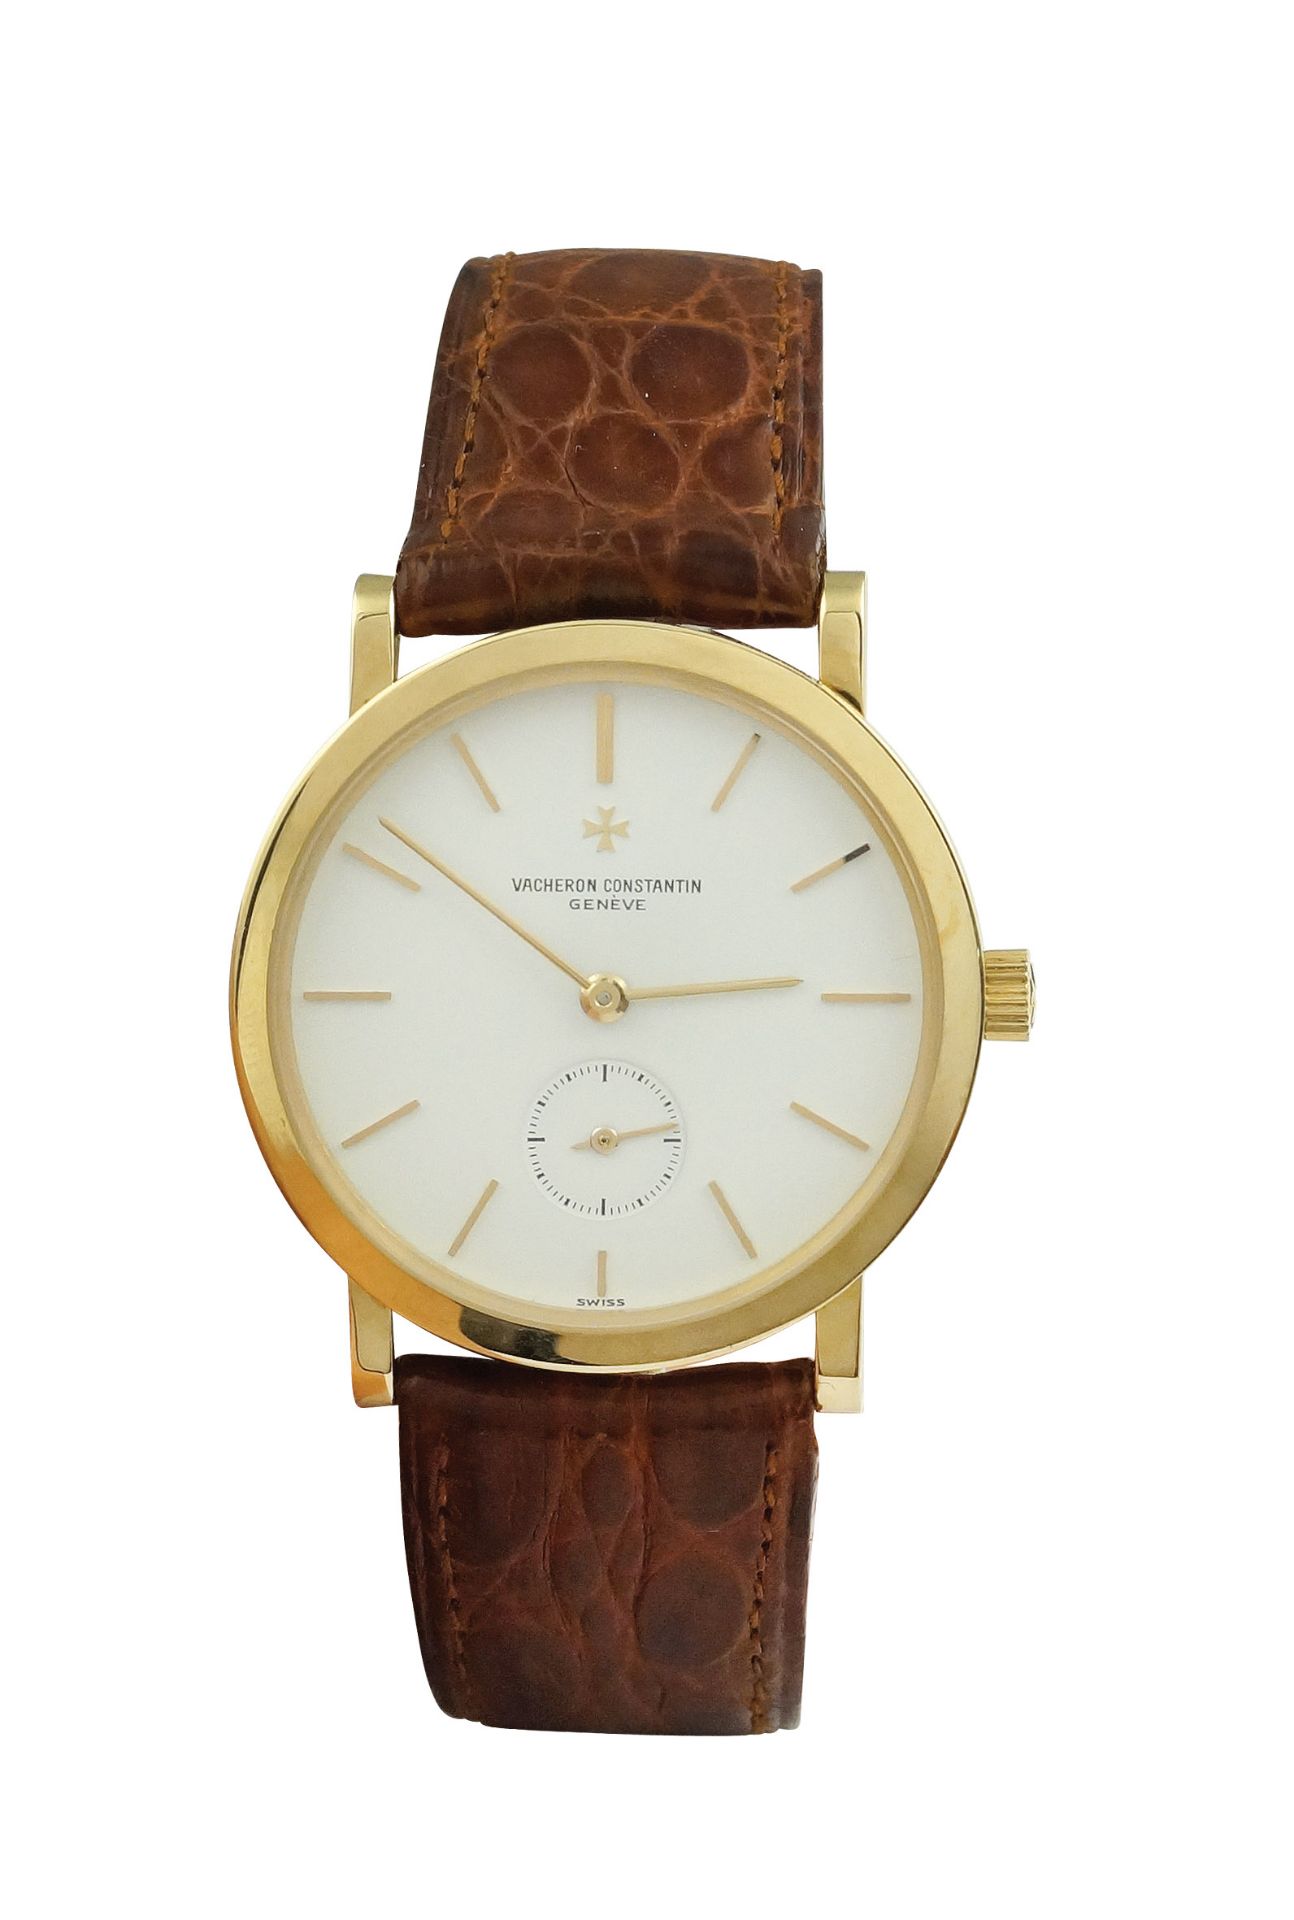 A Vacheron Constantin wrist watch